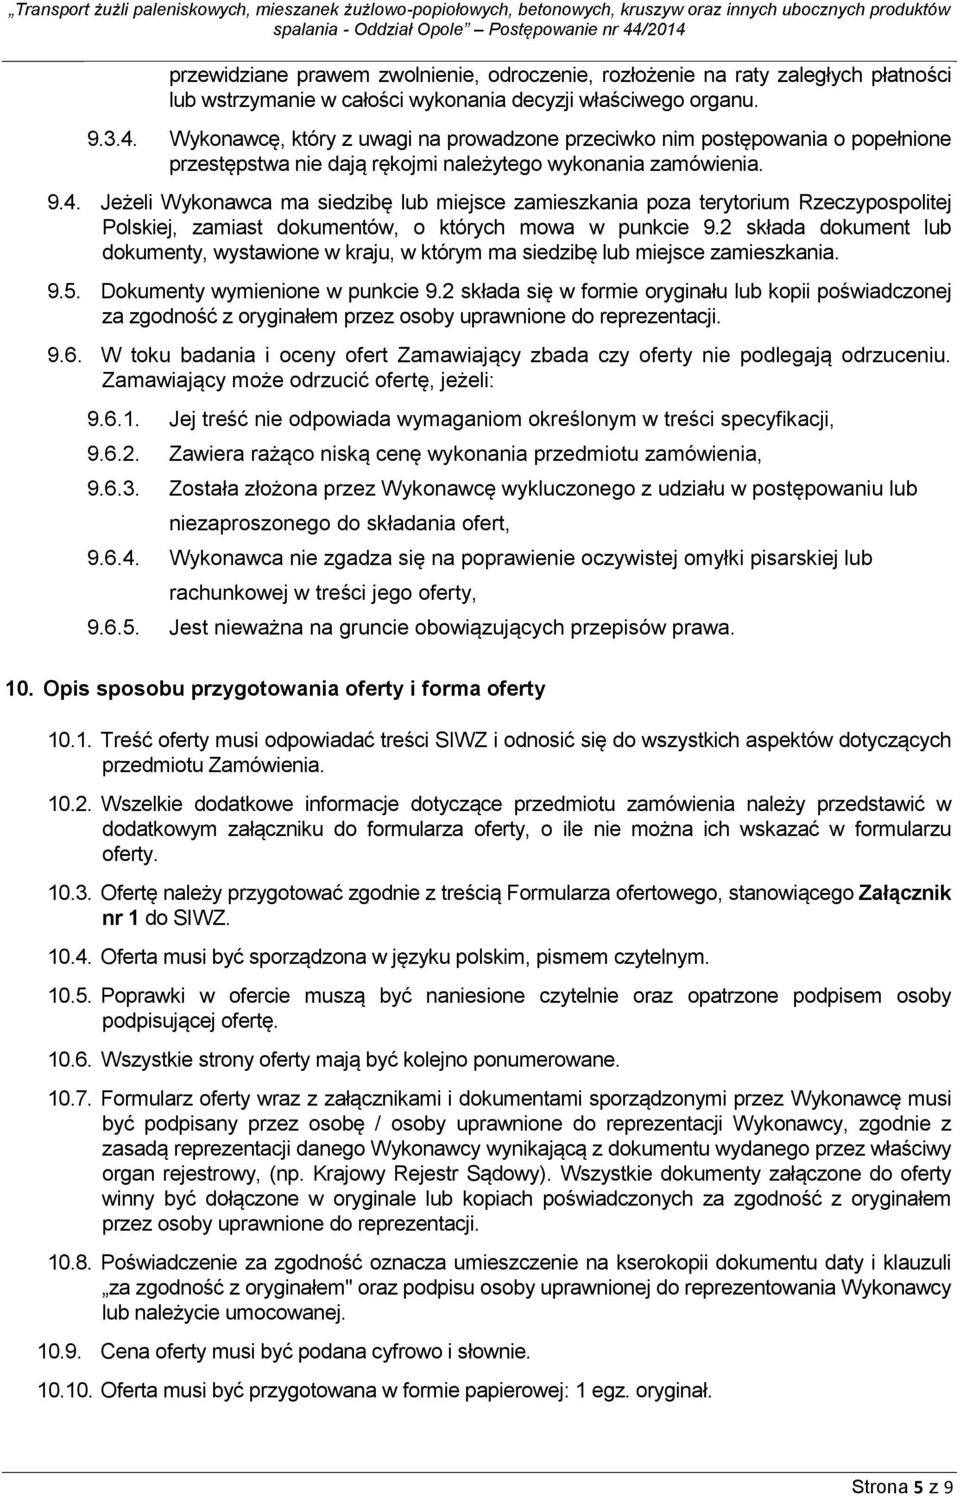 Jeżeli Wykonawca ma siedzibę lub miejsce zamieszkania poza terytorium Rzeczypospolitej Polskiej, zamiast dokumentów, o których mowa w punkcie 9.